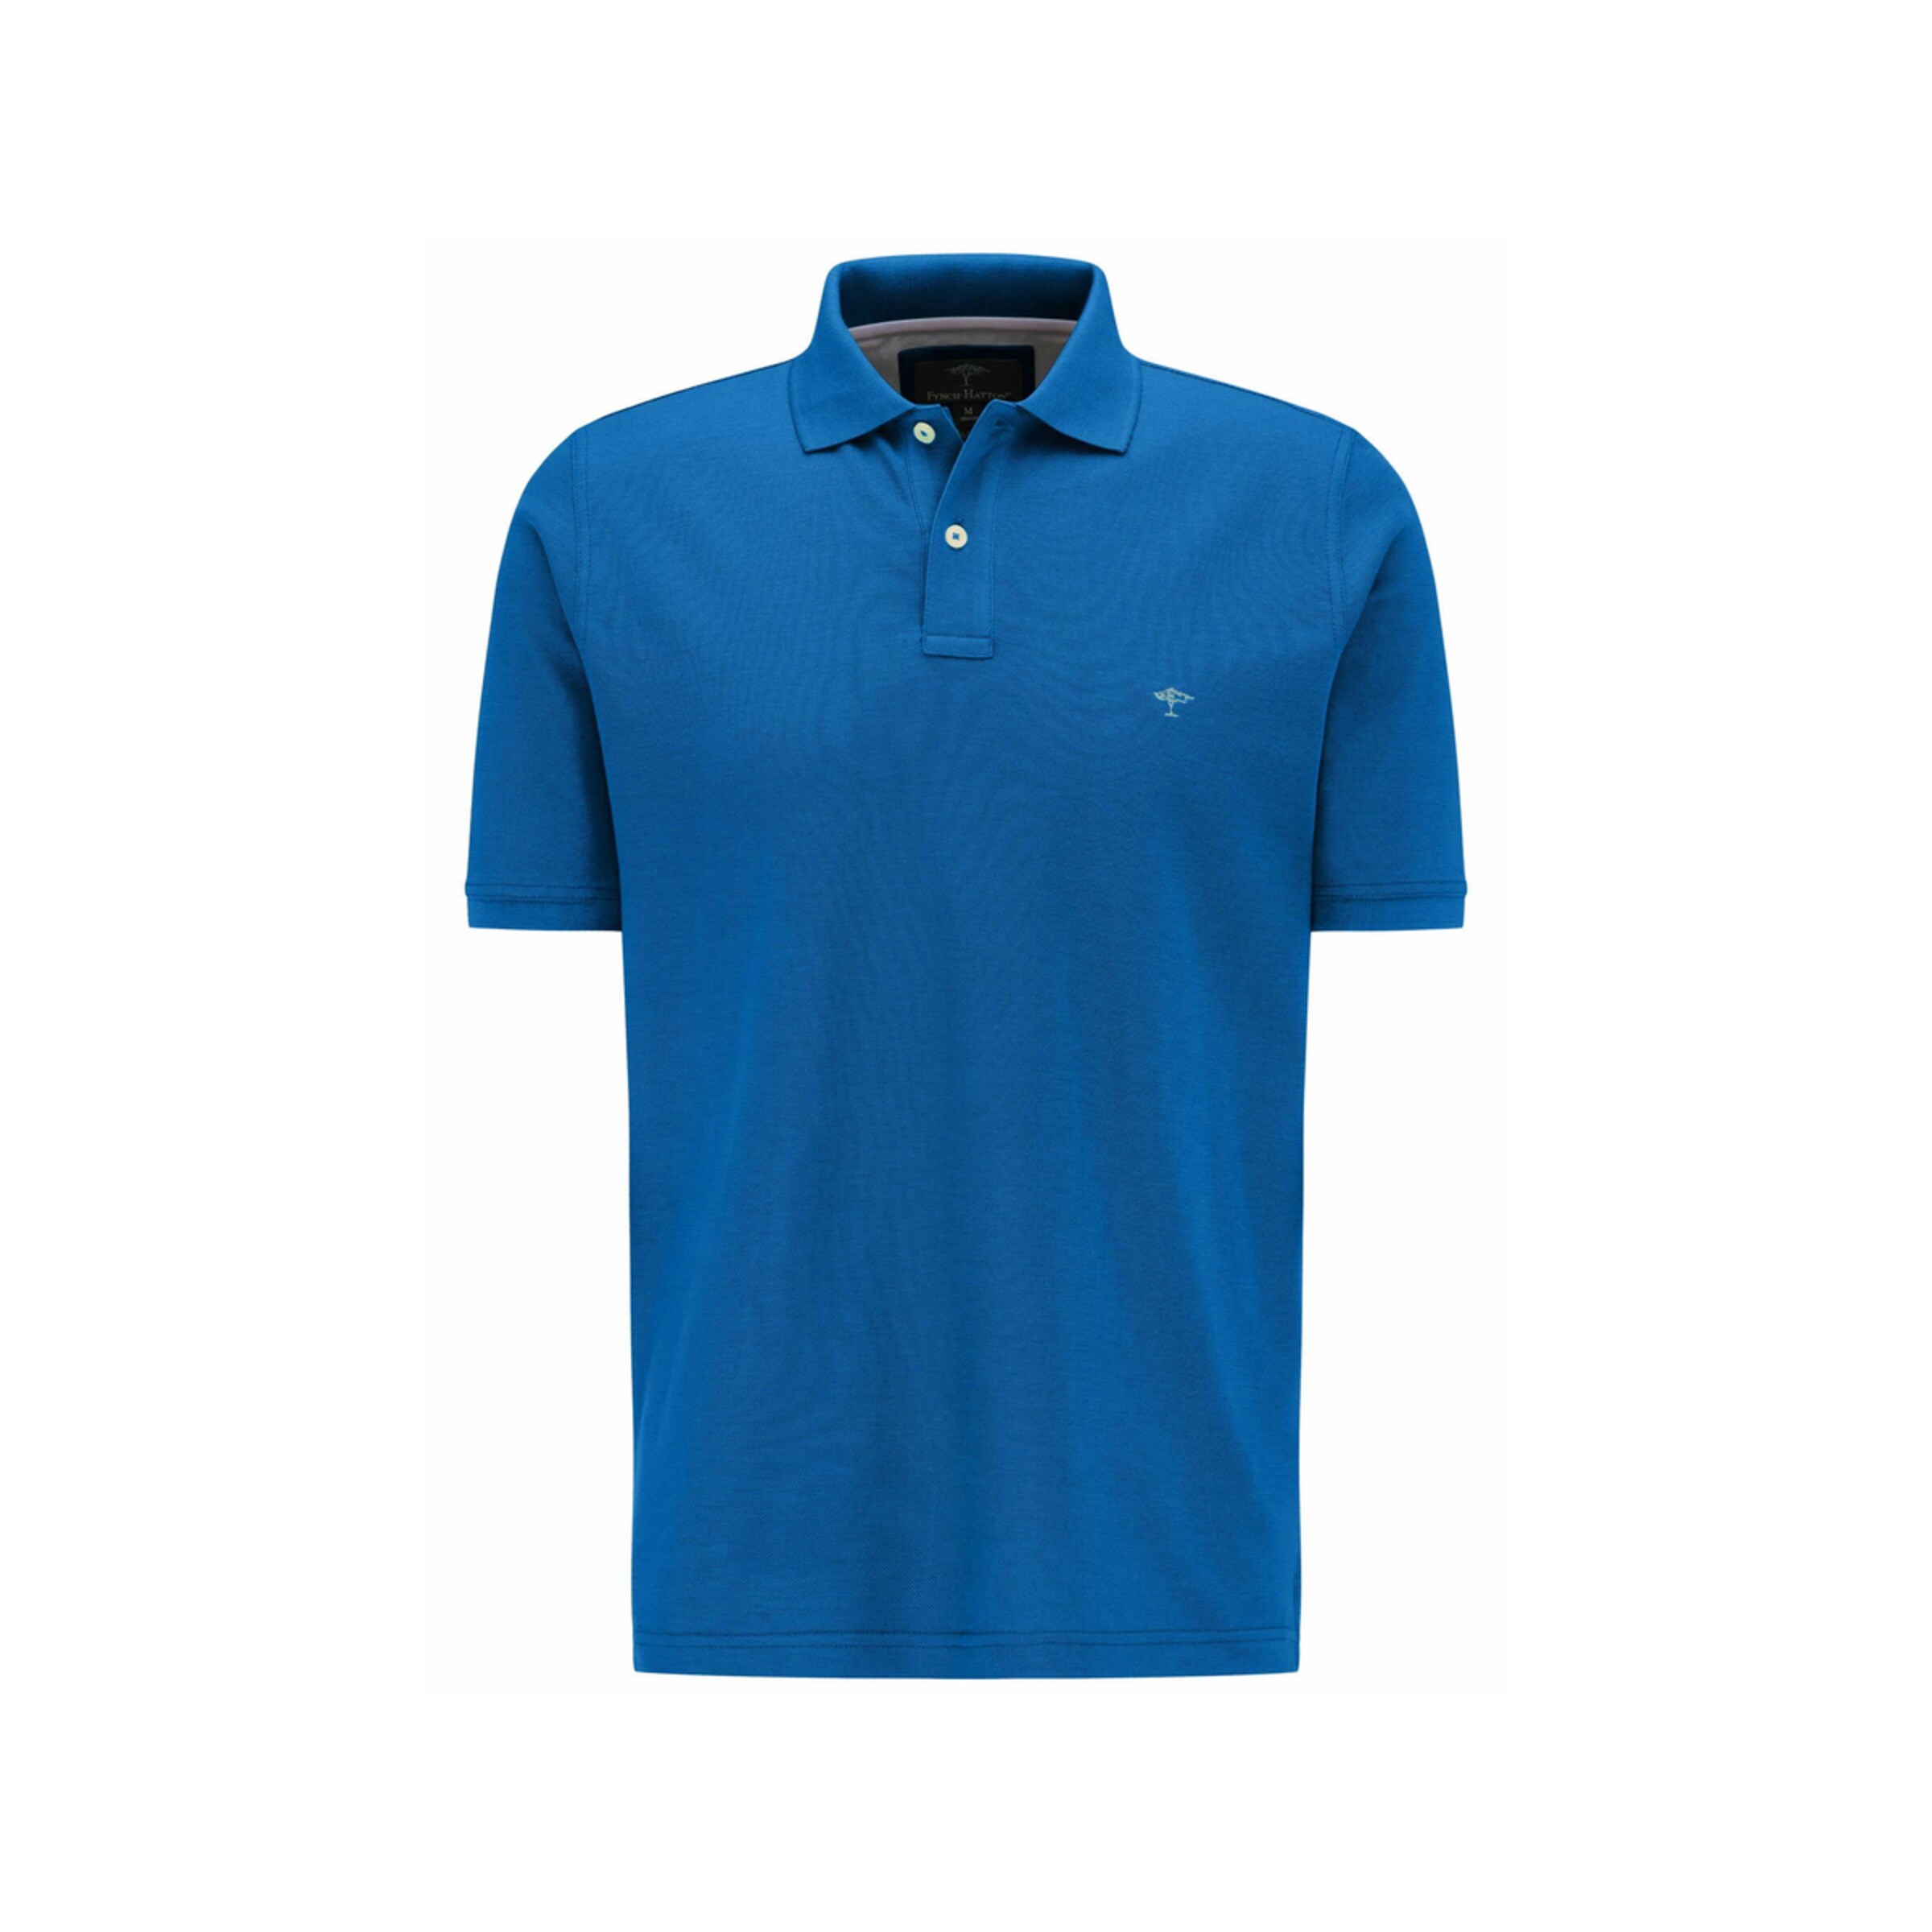 Männer Große Größen FYNCH-HATTON Poloshirt kurzarm in Blau - RQ78986